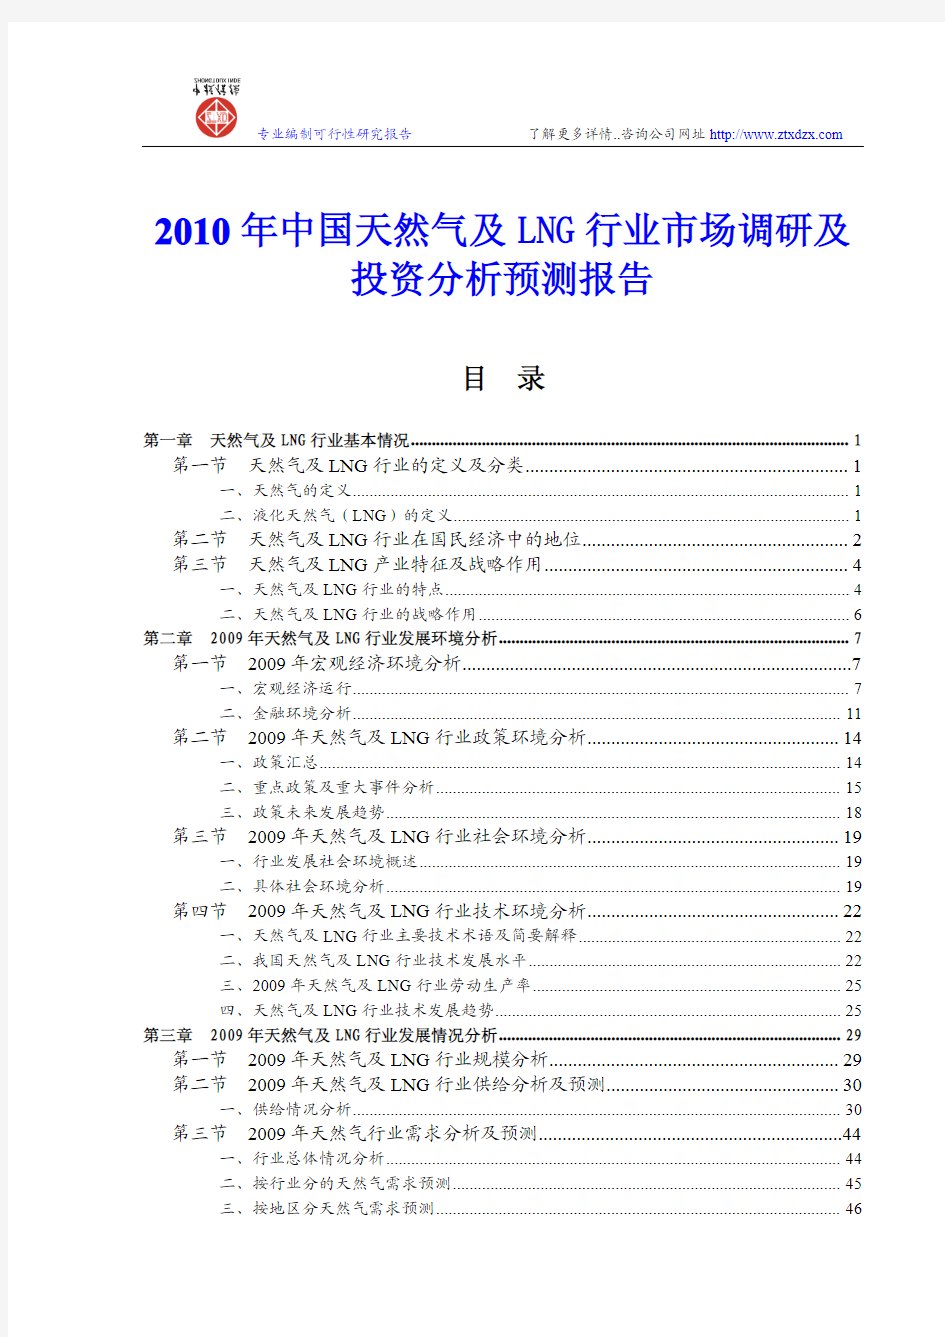 中国天然气及LNG行业市场调研及投资分析预测报告2010年